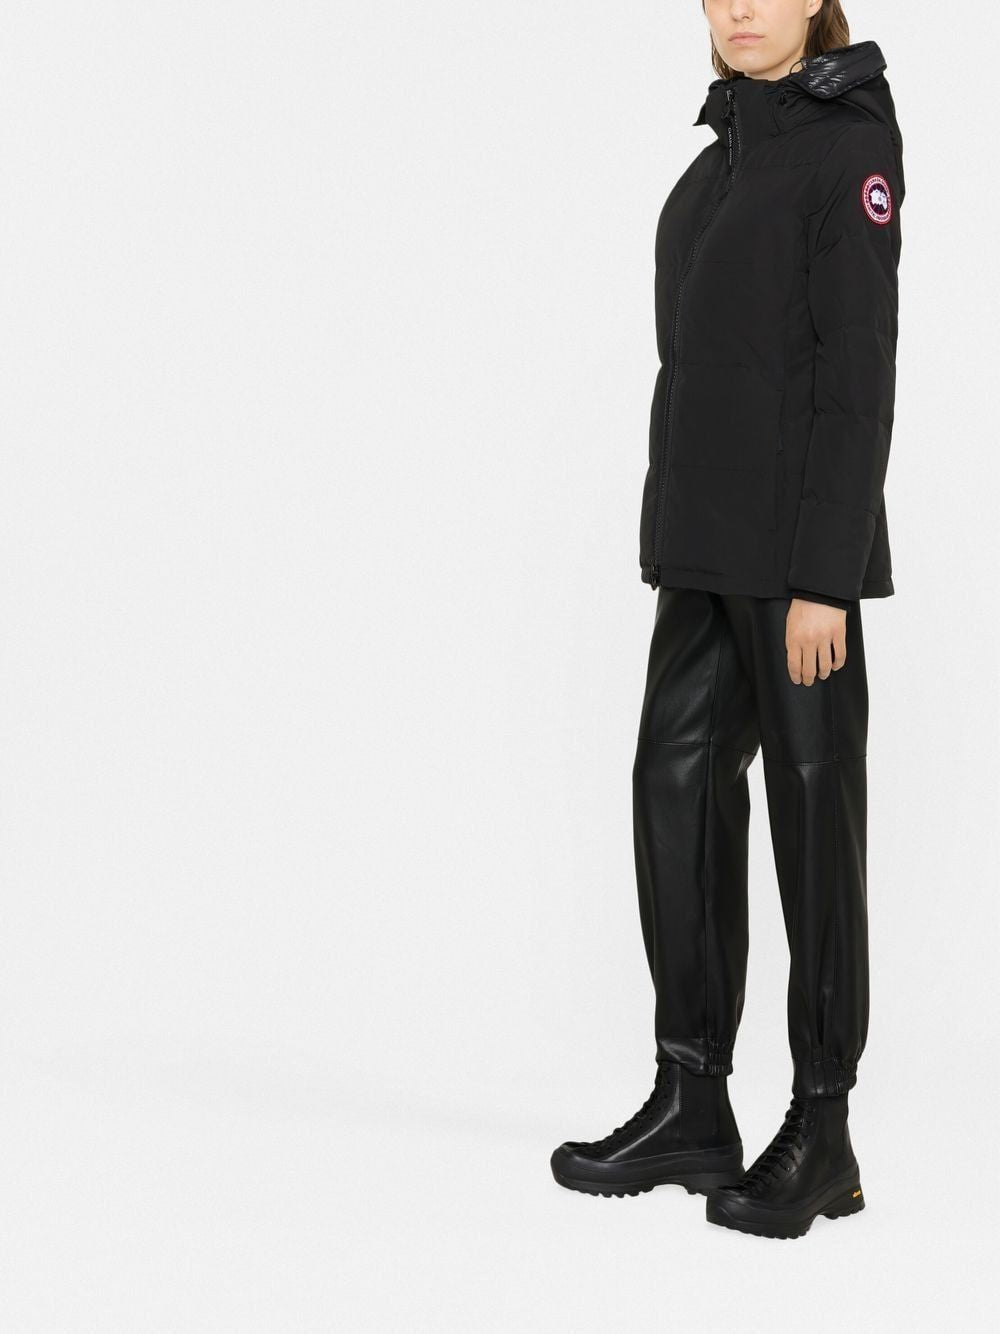 Áo khoác Parka đen FW22 cho nữ - Ấm áp, mềm mại và thời thượng!